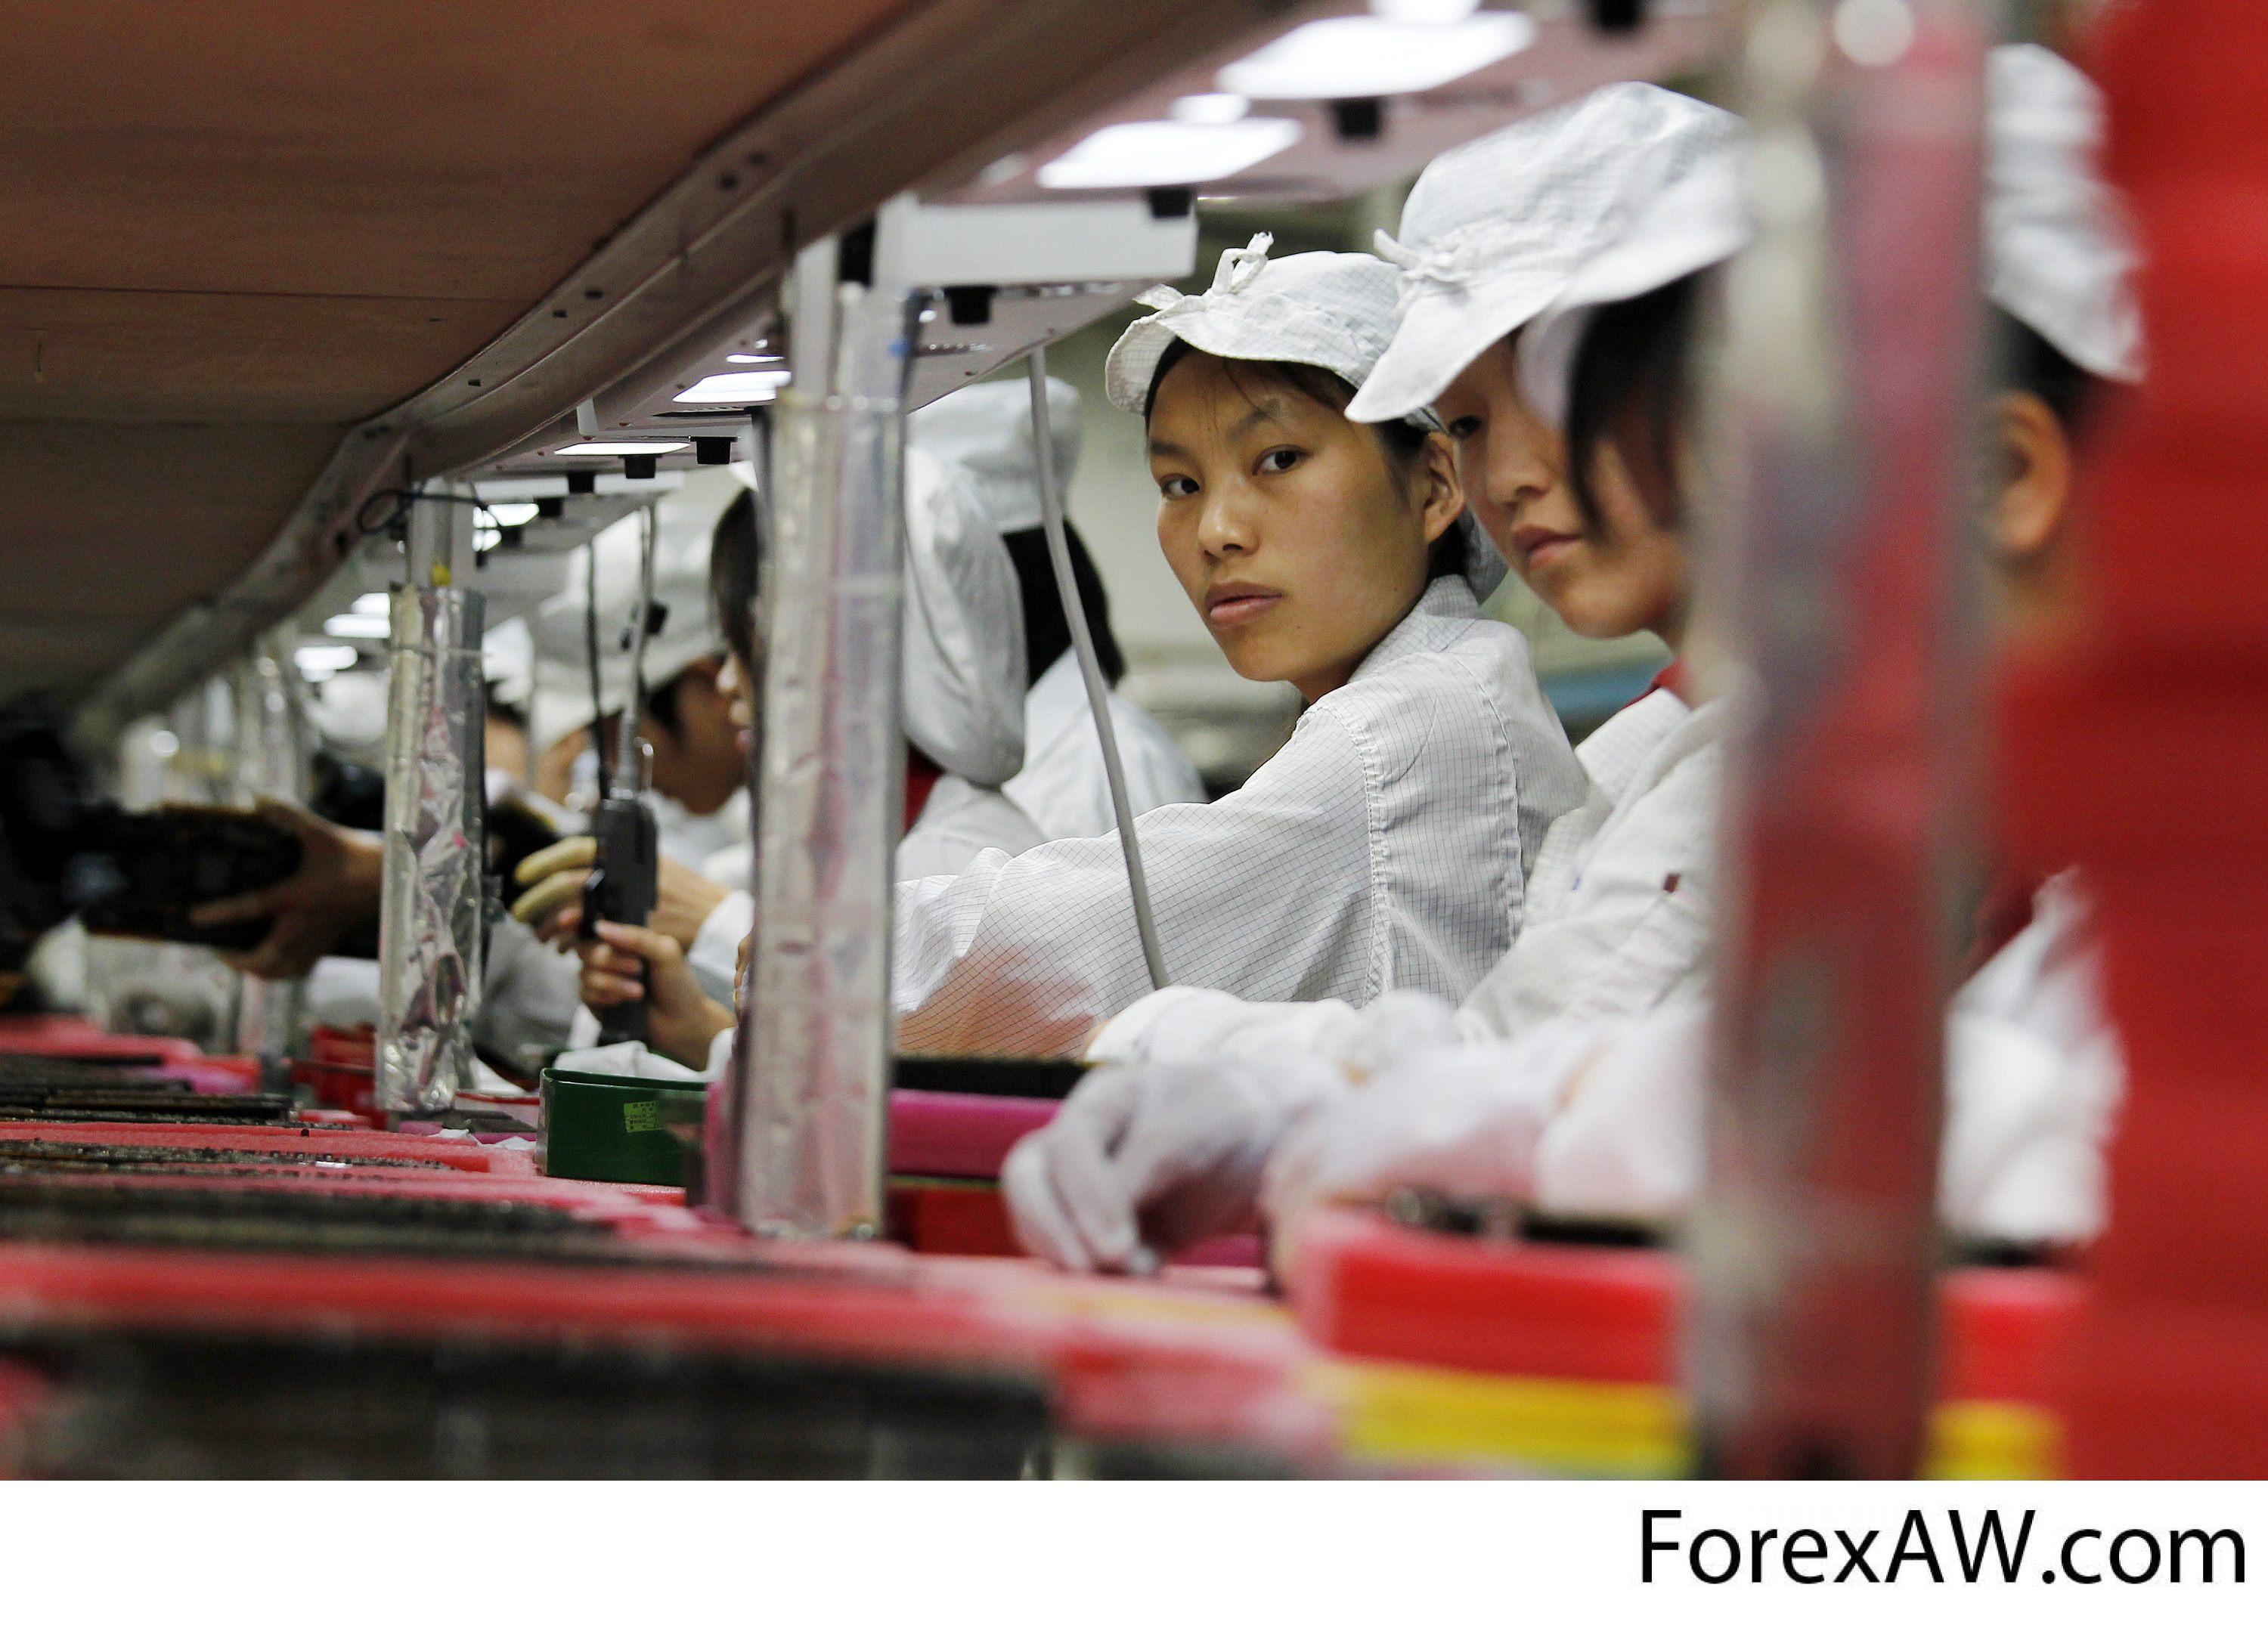 Производство товаров китай. Фабрика Фоксконн Китай. Завод Foxconn в Китае. Китайцы на конвейере. Китайцы на заводе.